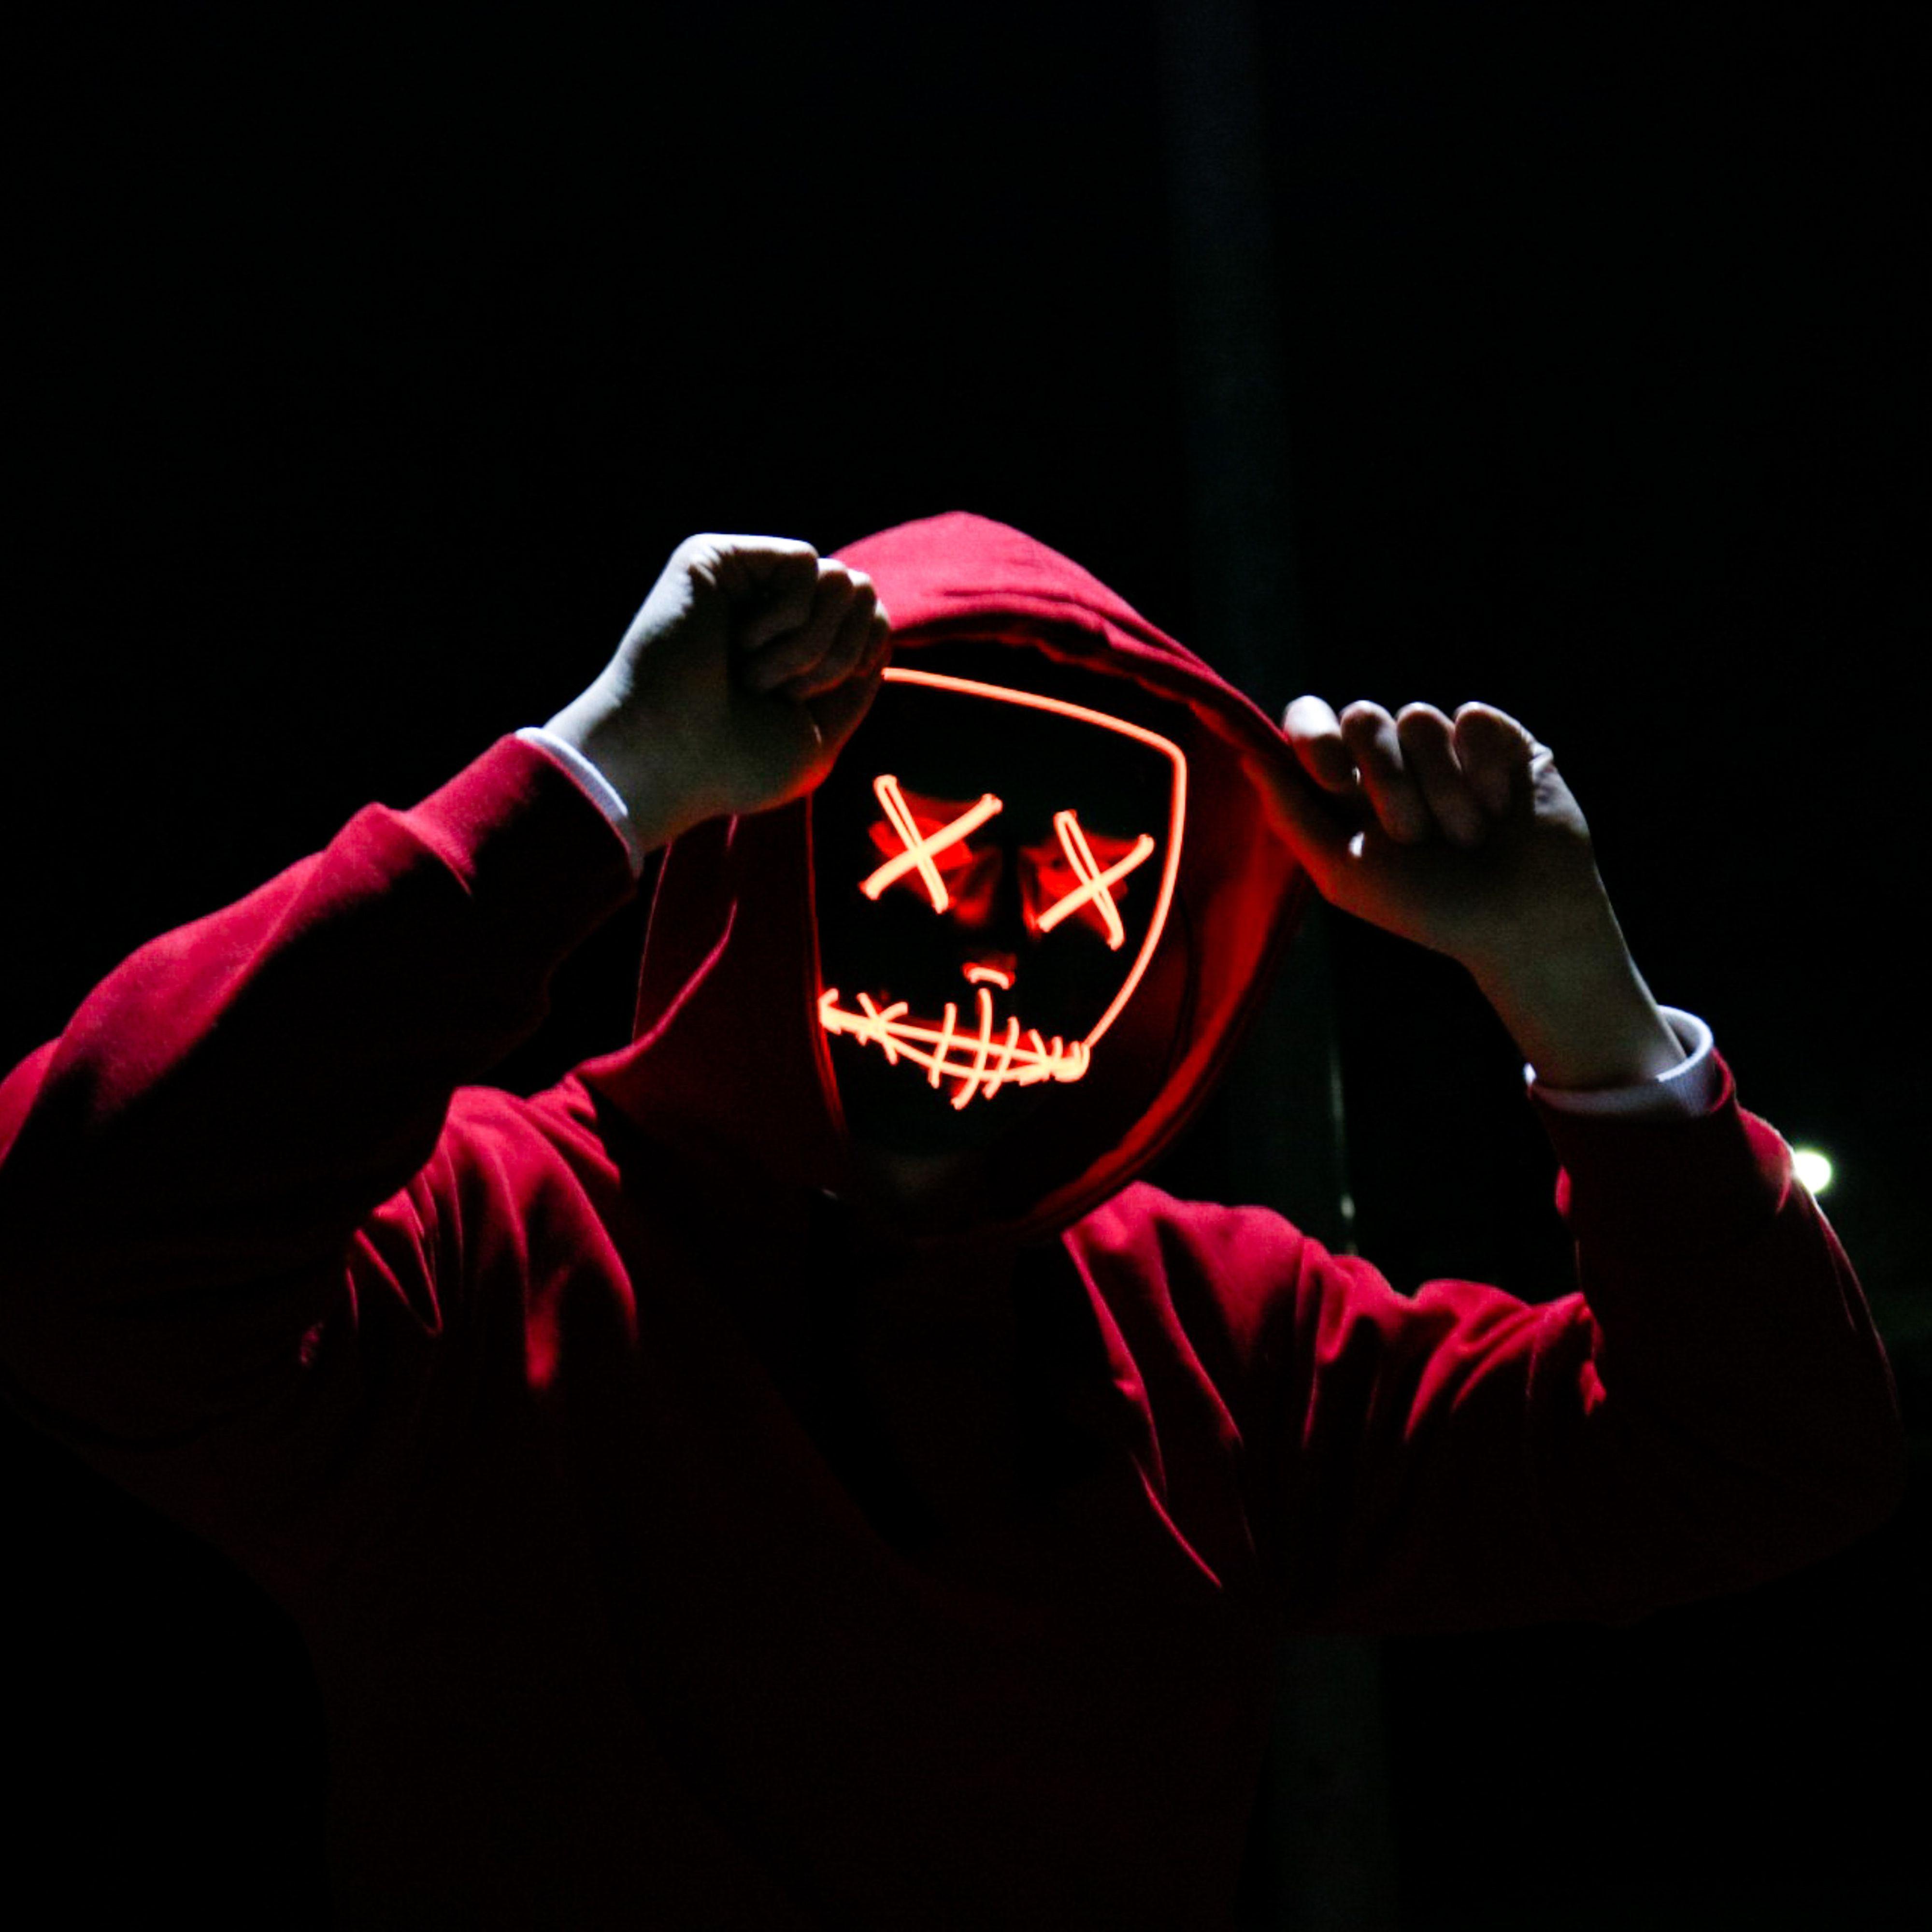 Человек в красной маске. Маска с крестиками вместо глаз. Люди в масках на аву. Неоновая маска анонимус. Маска хакера.